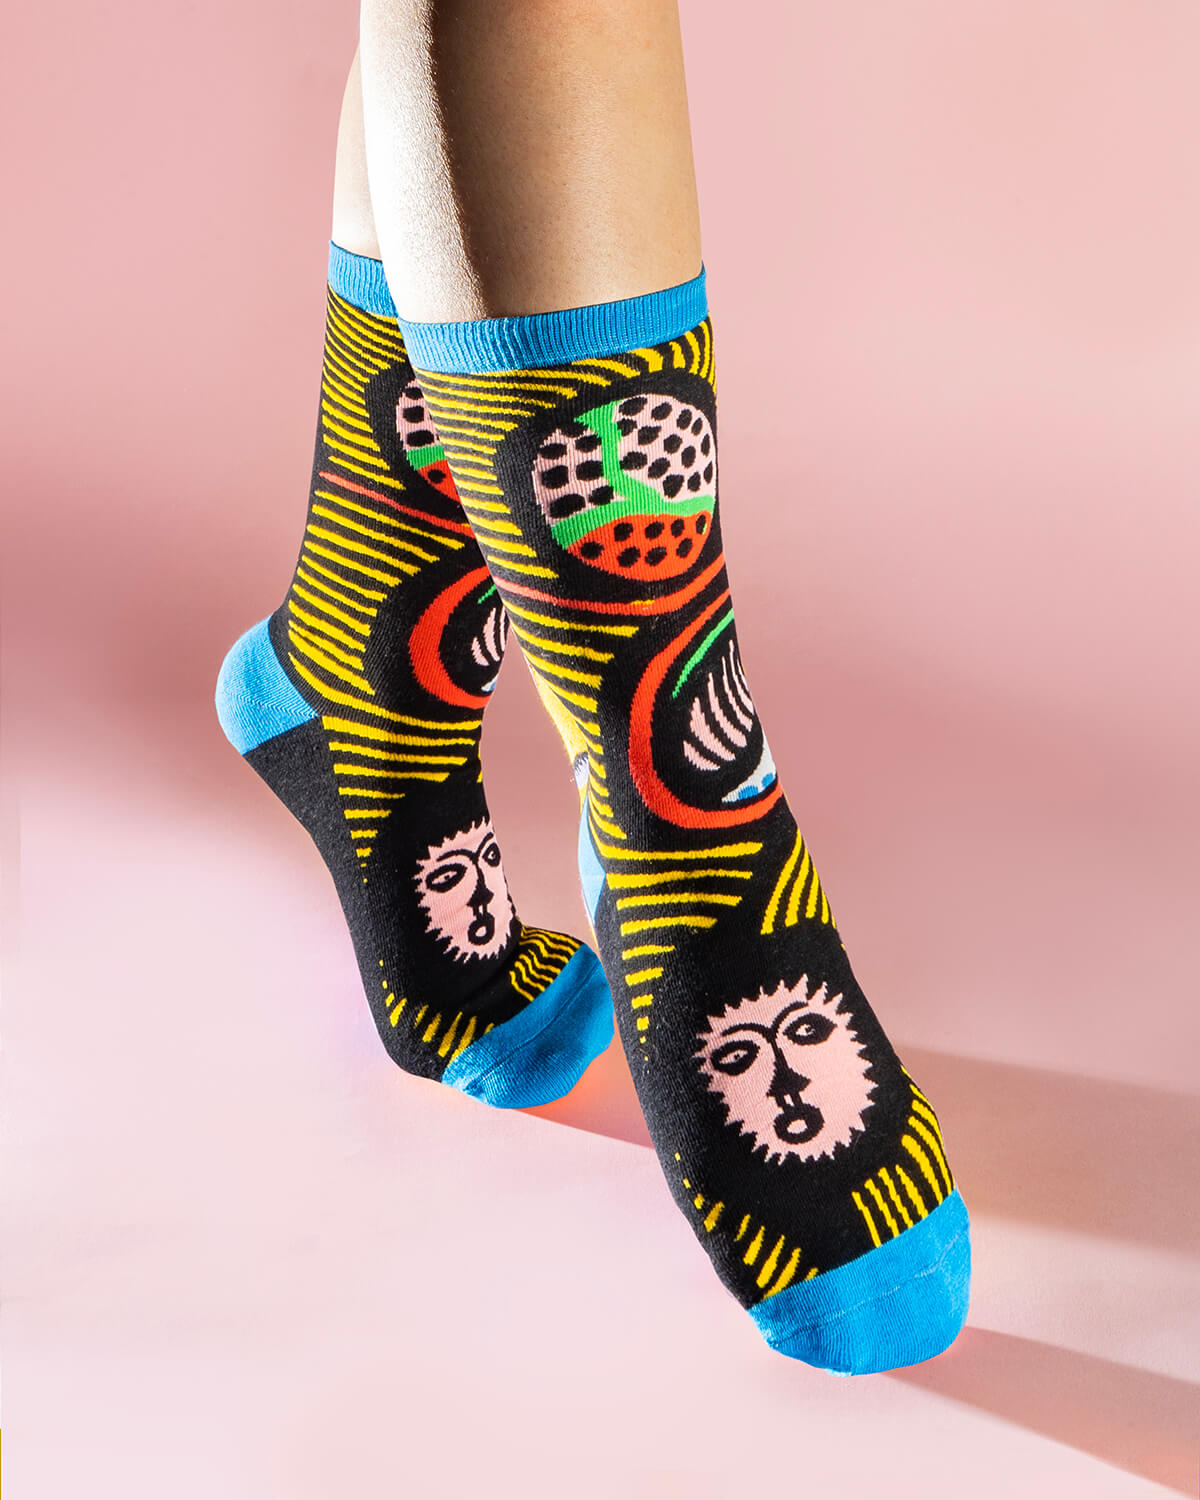 Yayoi Kusama 'To Michelle Obama' Knitted Socks 